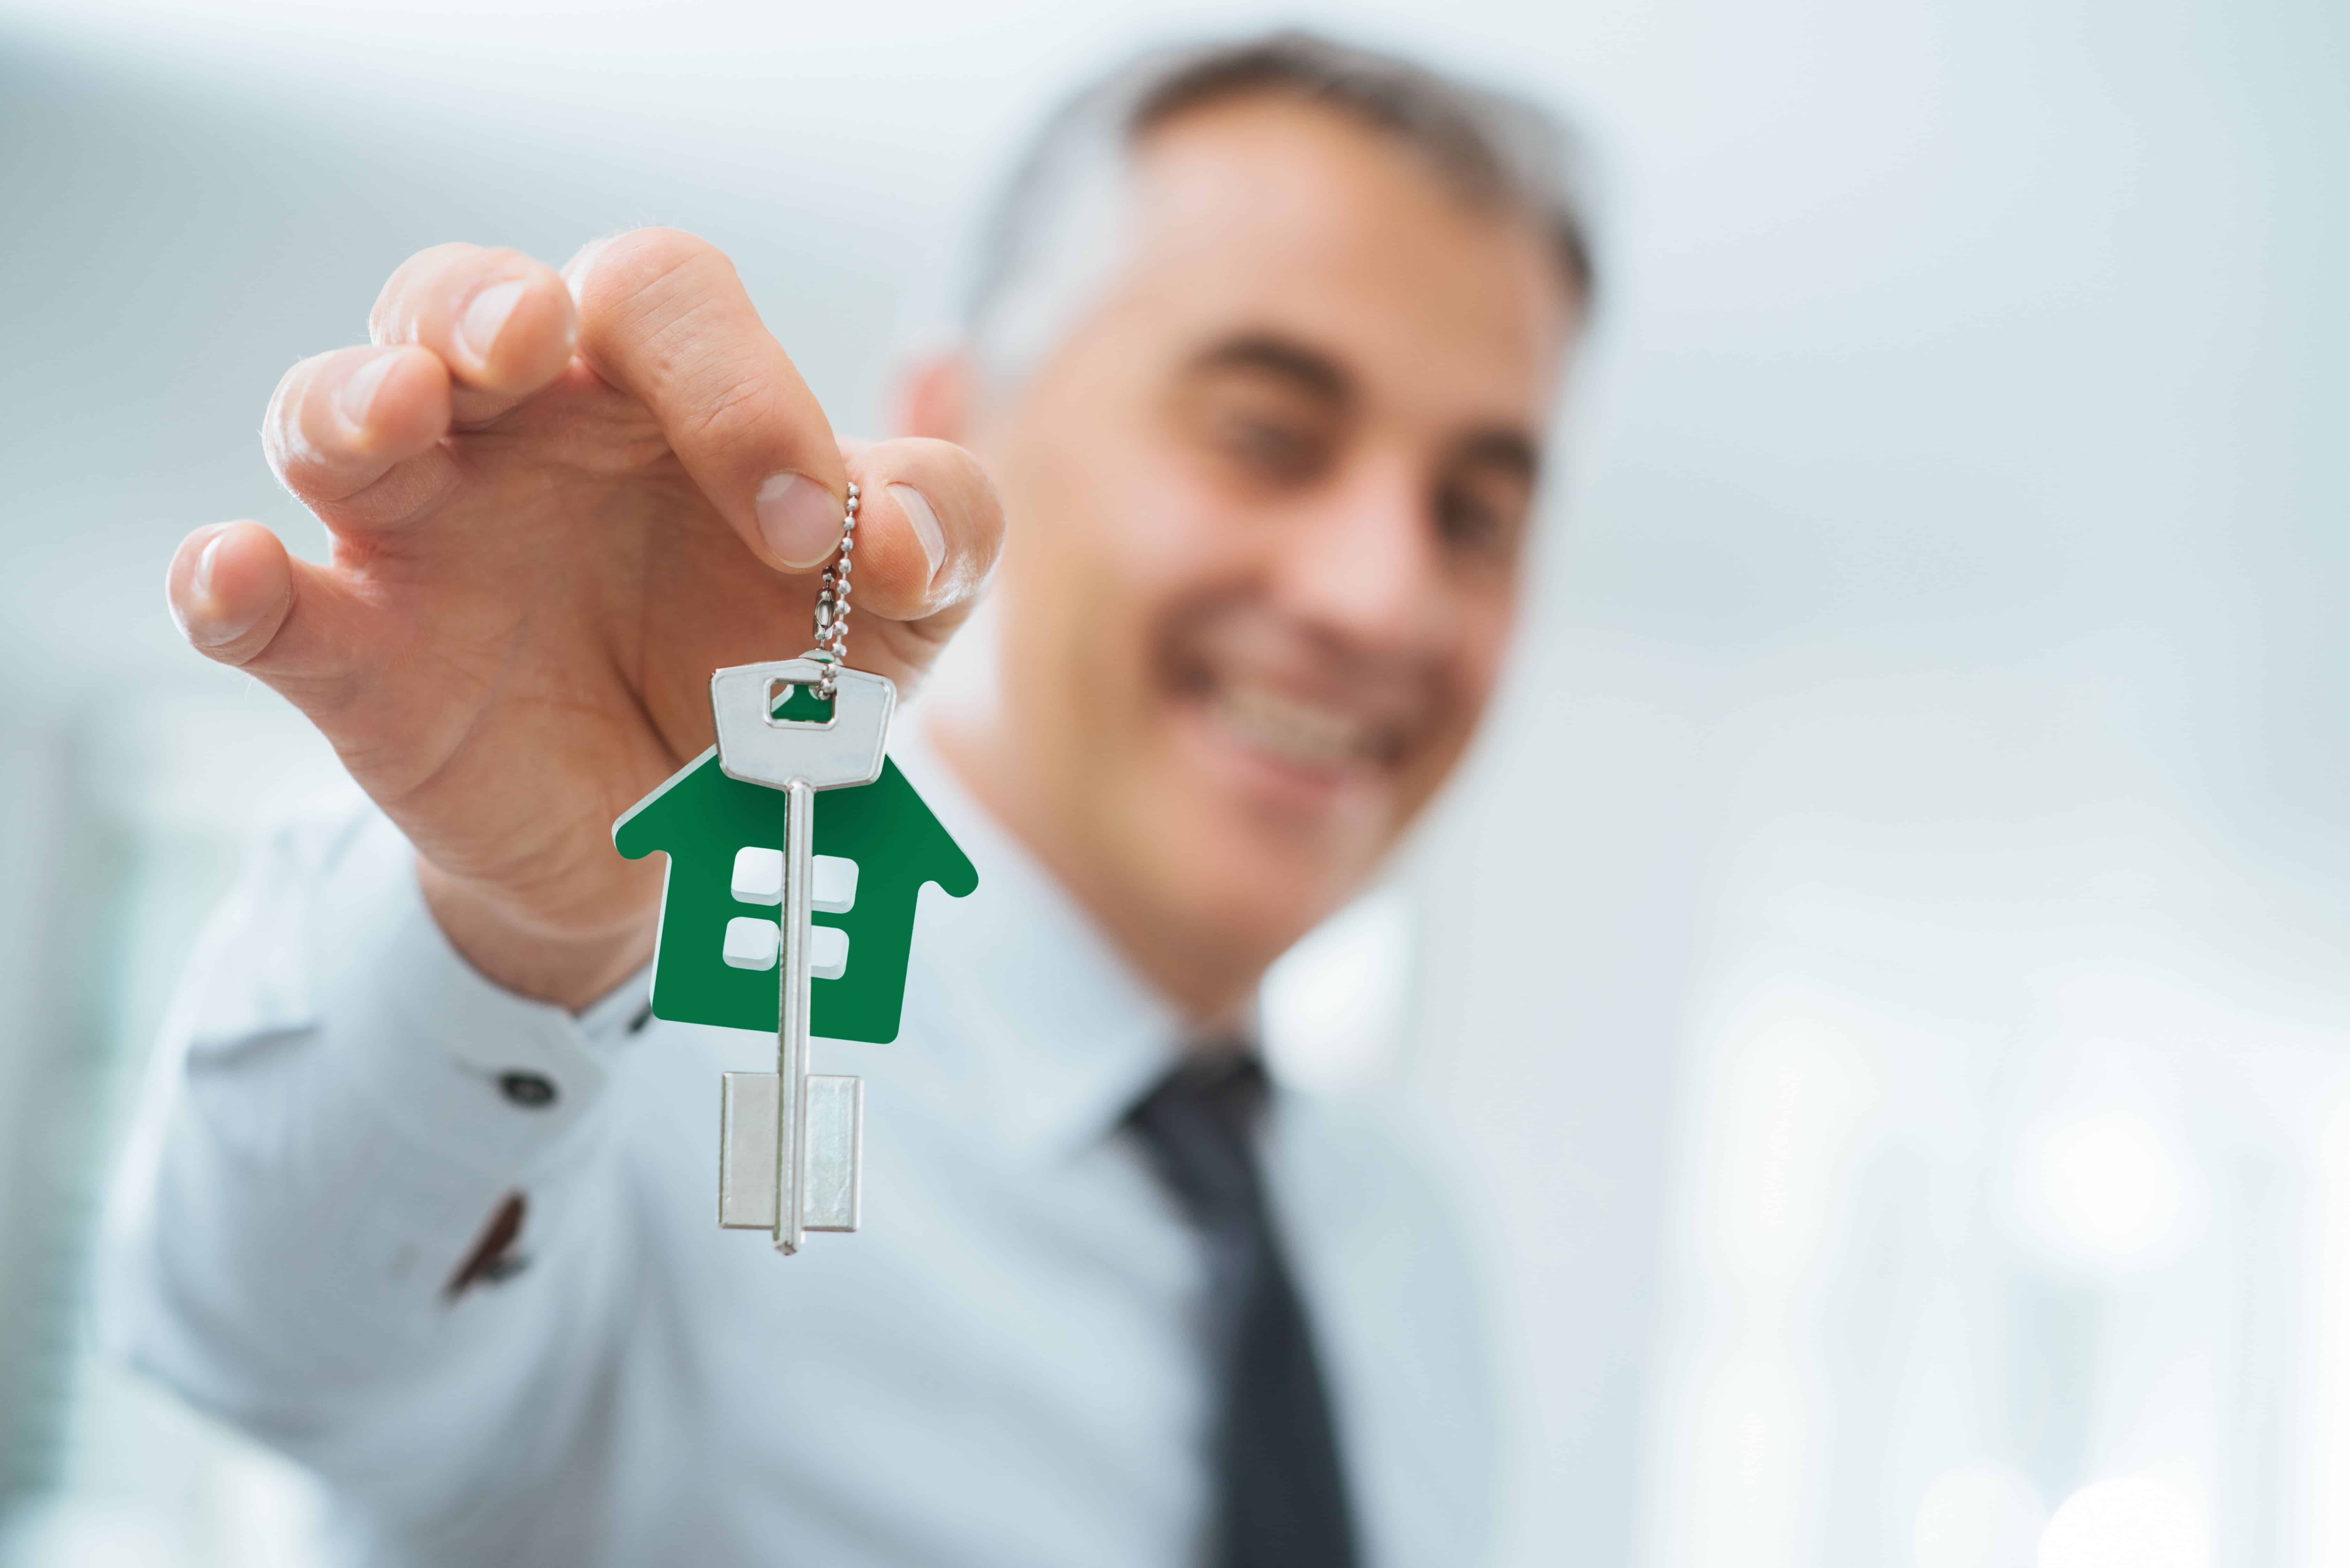 Profissões em imobiliária: quais existem além do corretor de imóveis?